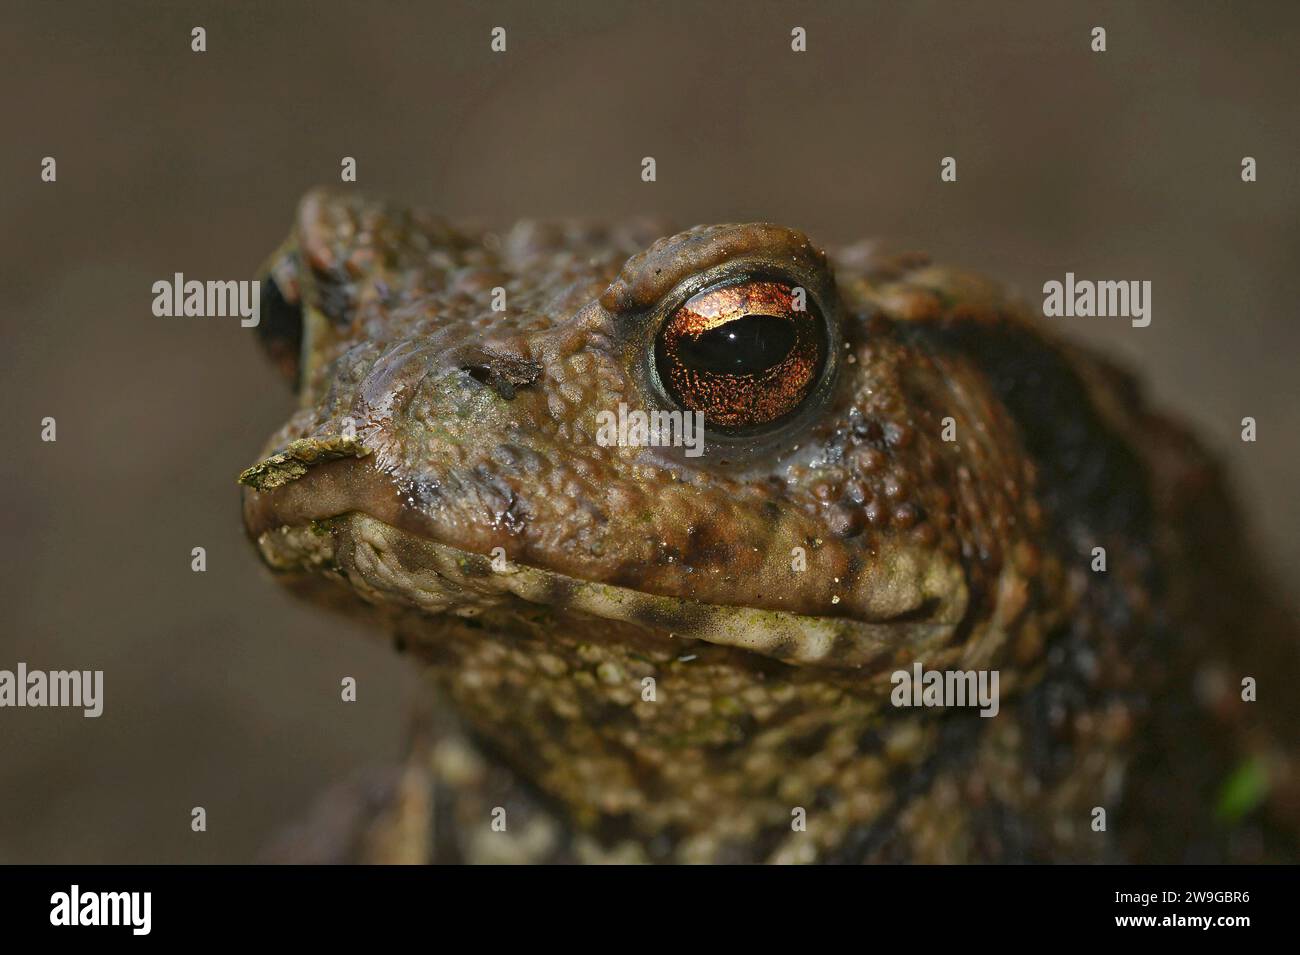 Natural facial closeup on a Common European toad, Bufo bufo Stock Photo